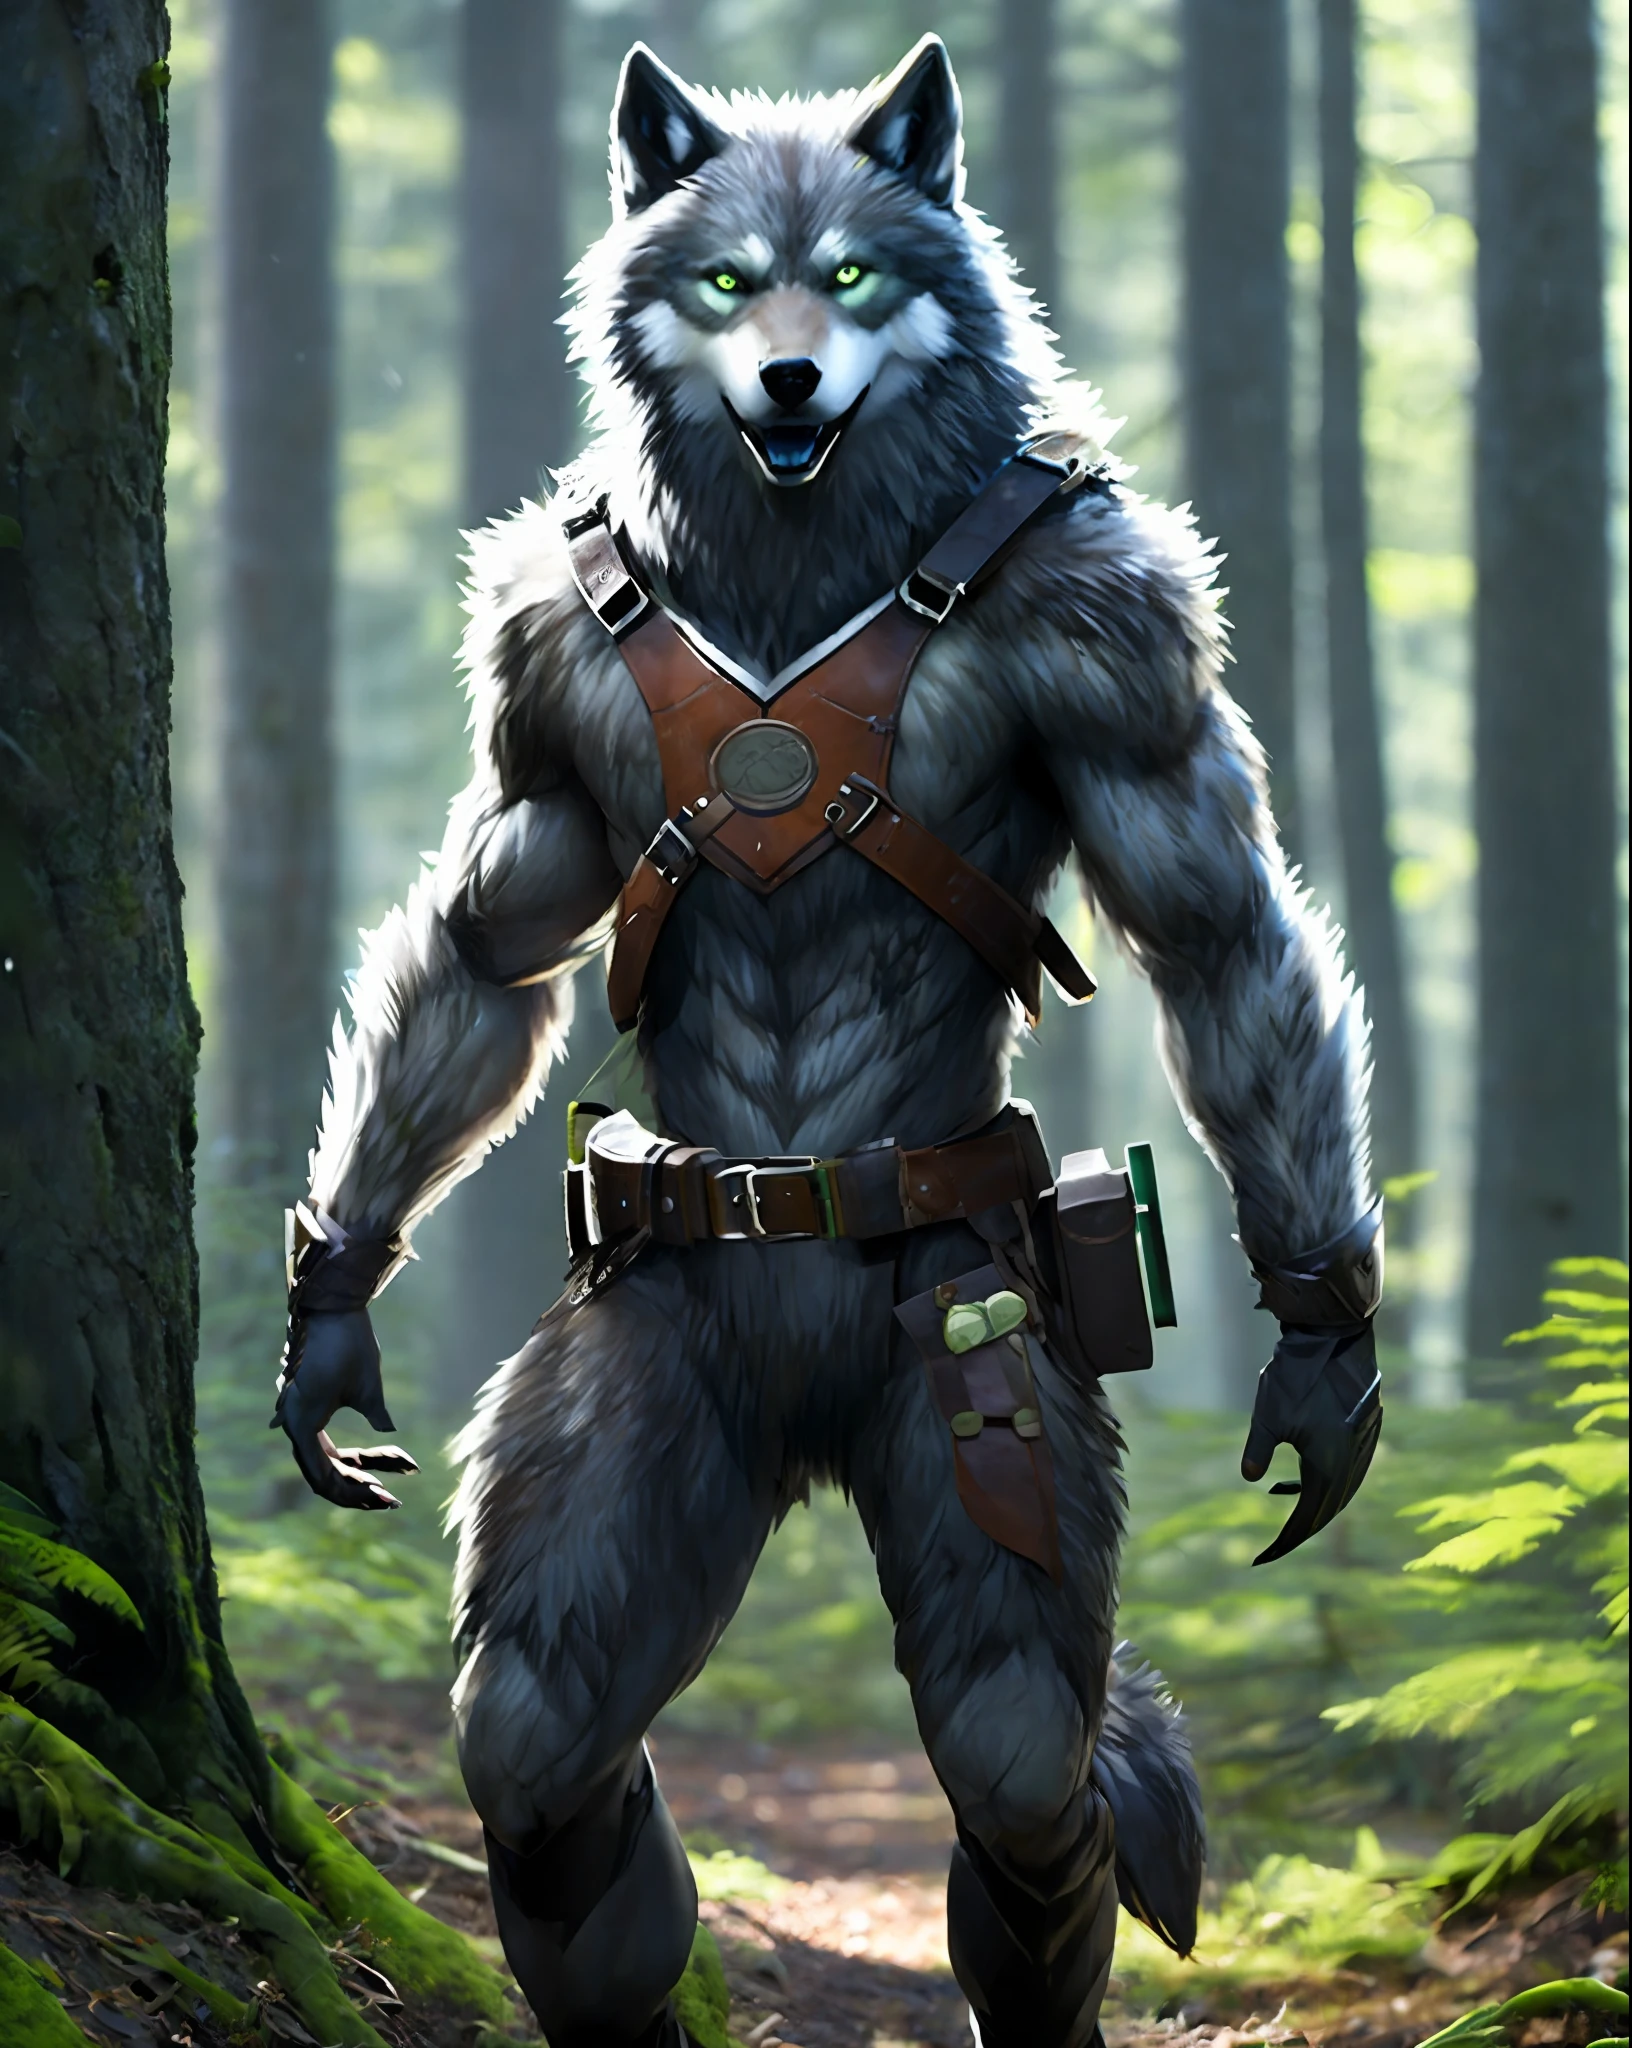 에프king_sci에프i_v2, 늑대인간, werewol에프 wol에프, 큰 머리, (녹색 눈), standing in a 에프orest, 공구 벨트, 80mm, 에프/1.8